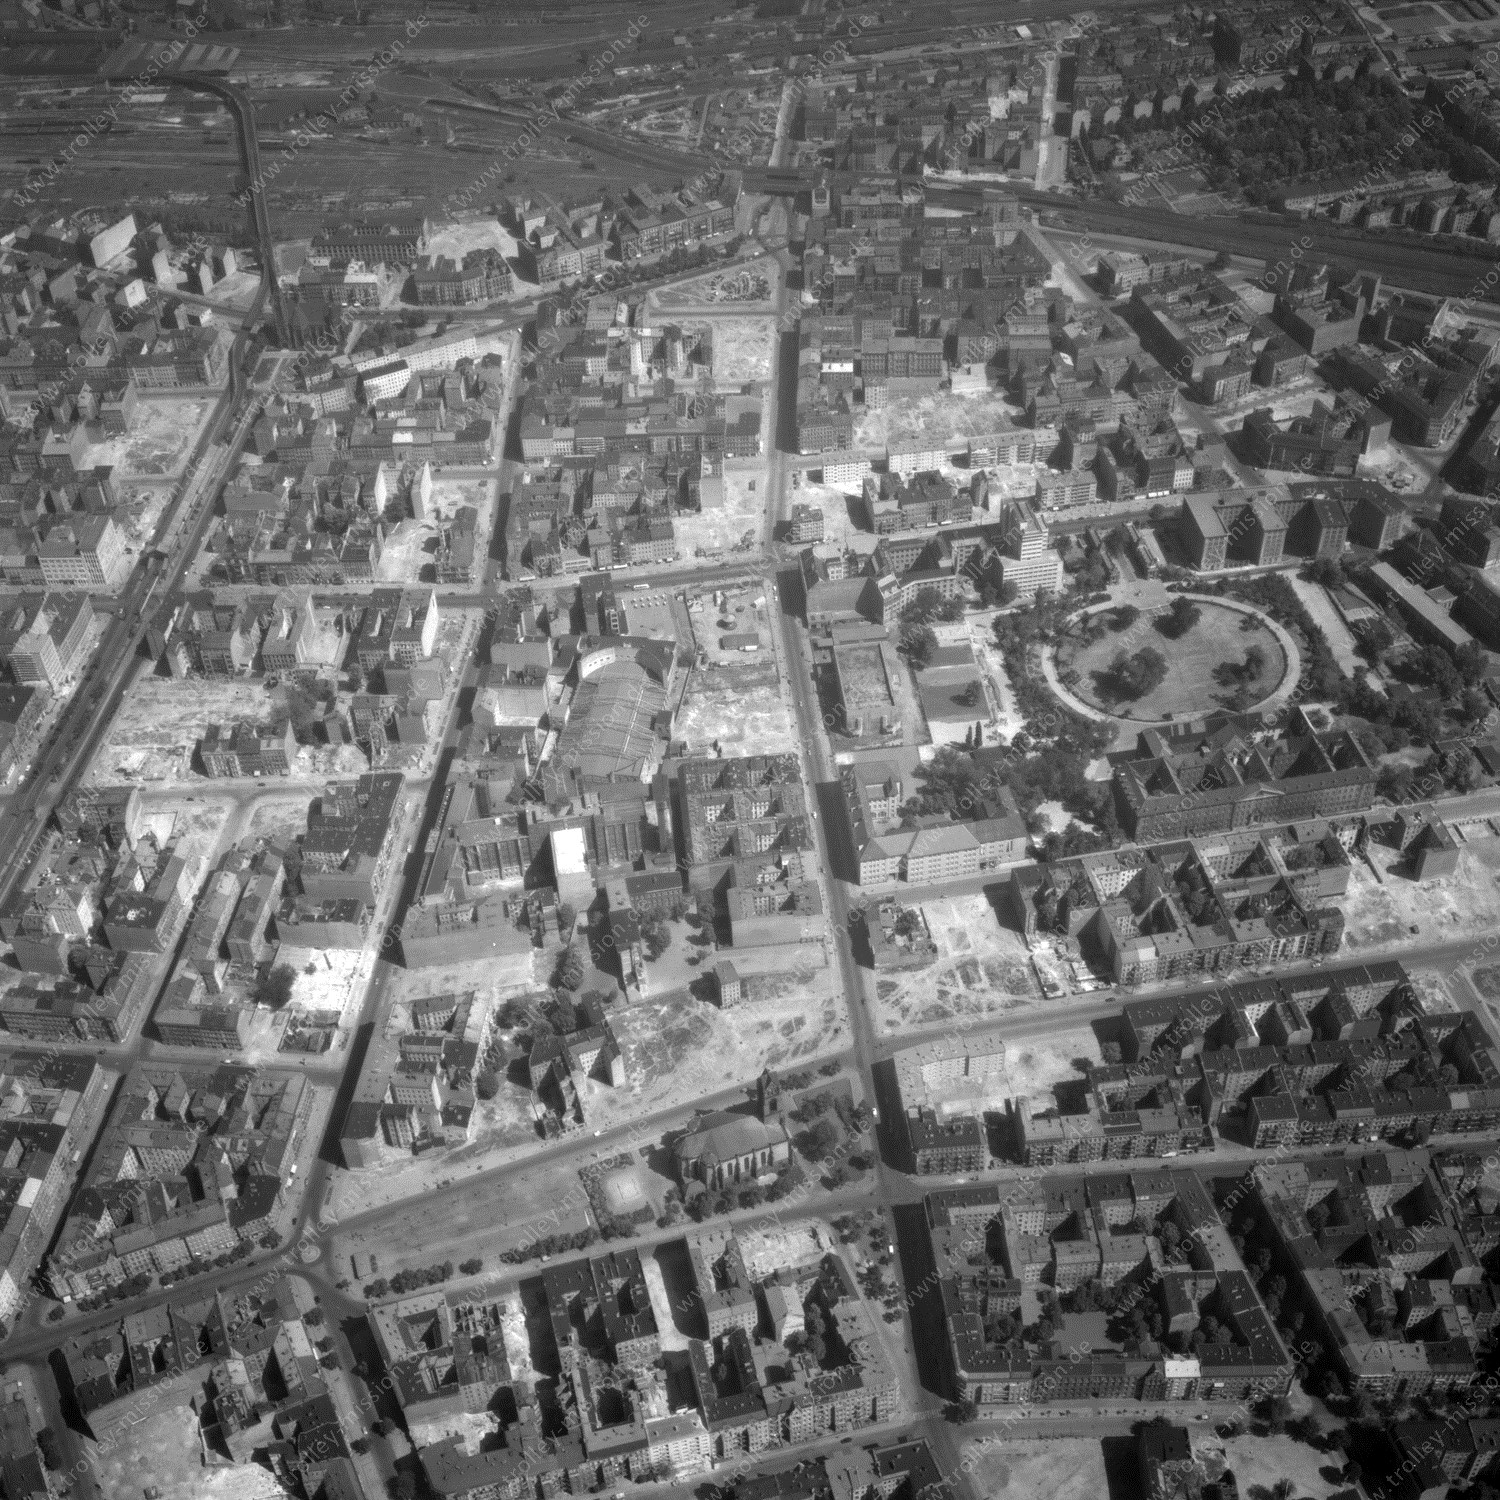 Alte Fotos und Luftbilder von Berlin - Luftbildaufnahme Nr. 05 - Historische Luftaufnahmen von West-Berlin aus dem Jahr 1954 - Flugstrecke Golf